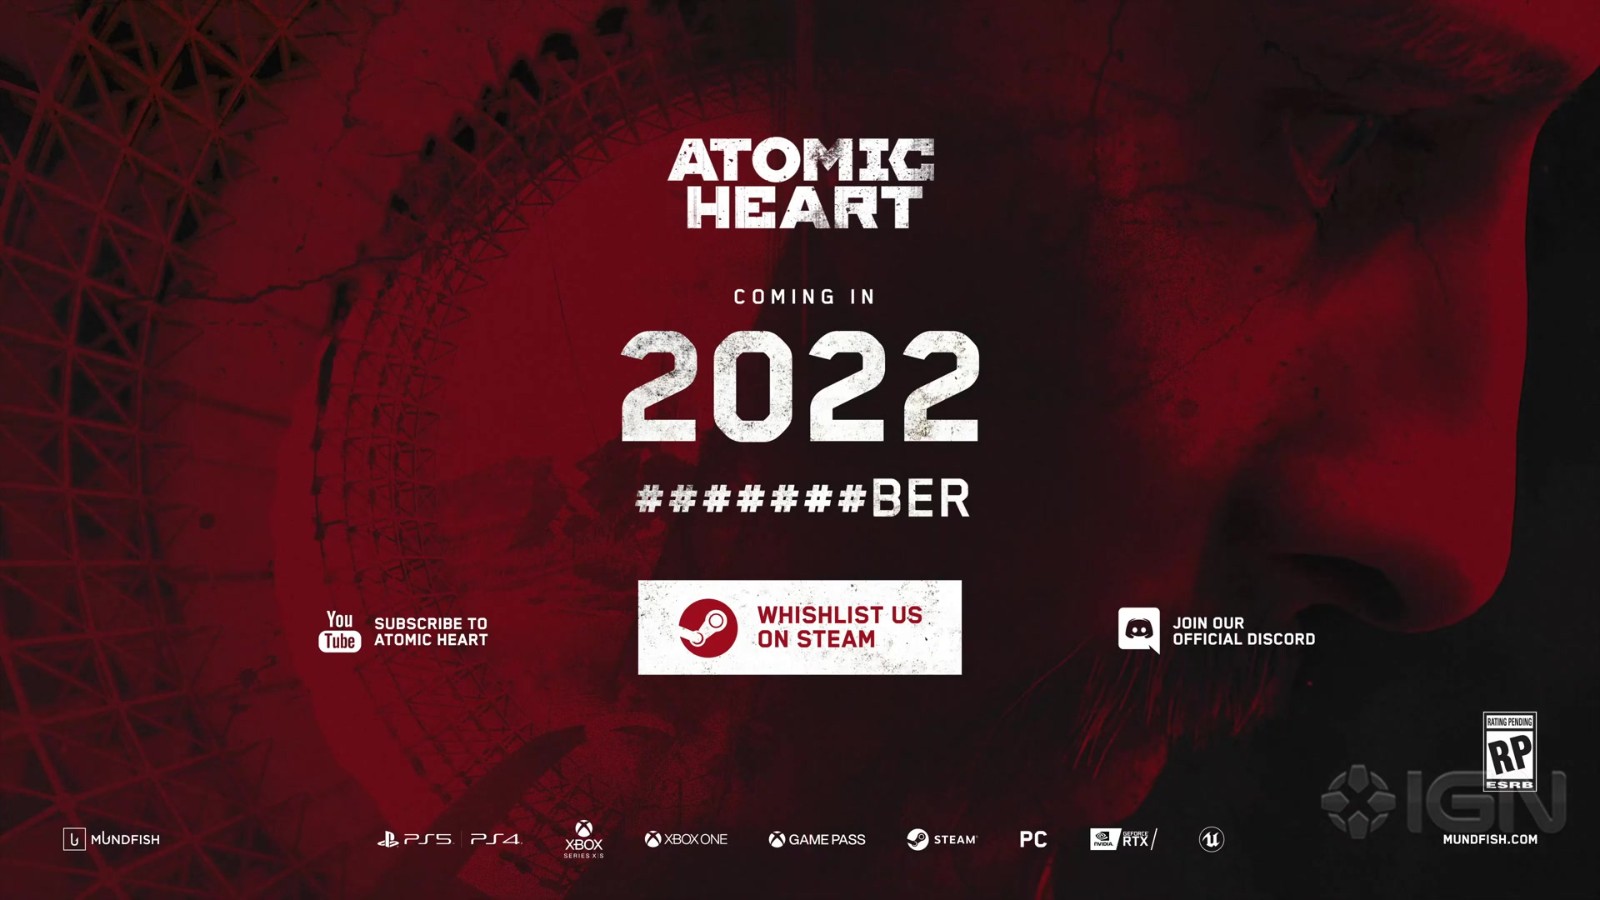 《原子之心》将于今年第四季度推出 新预告片公布